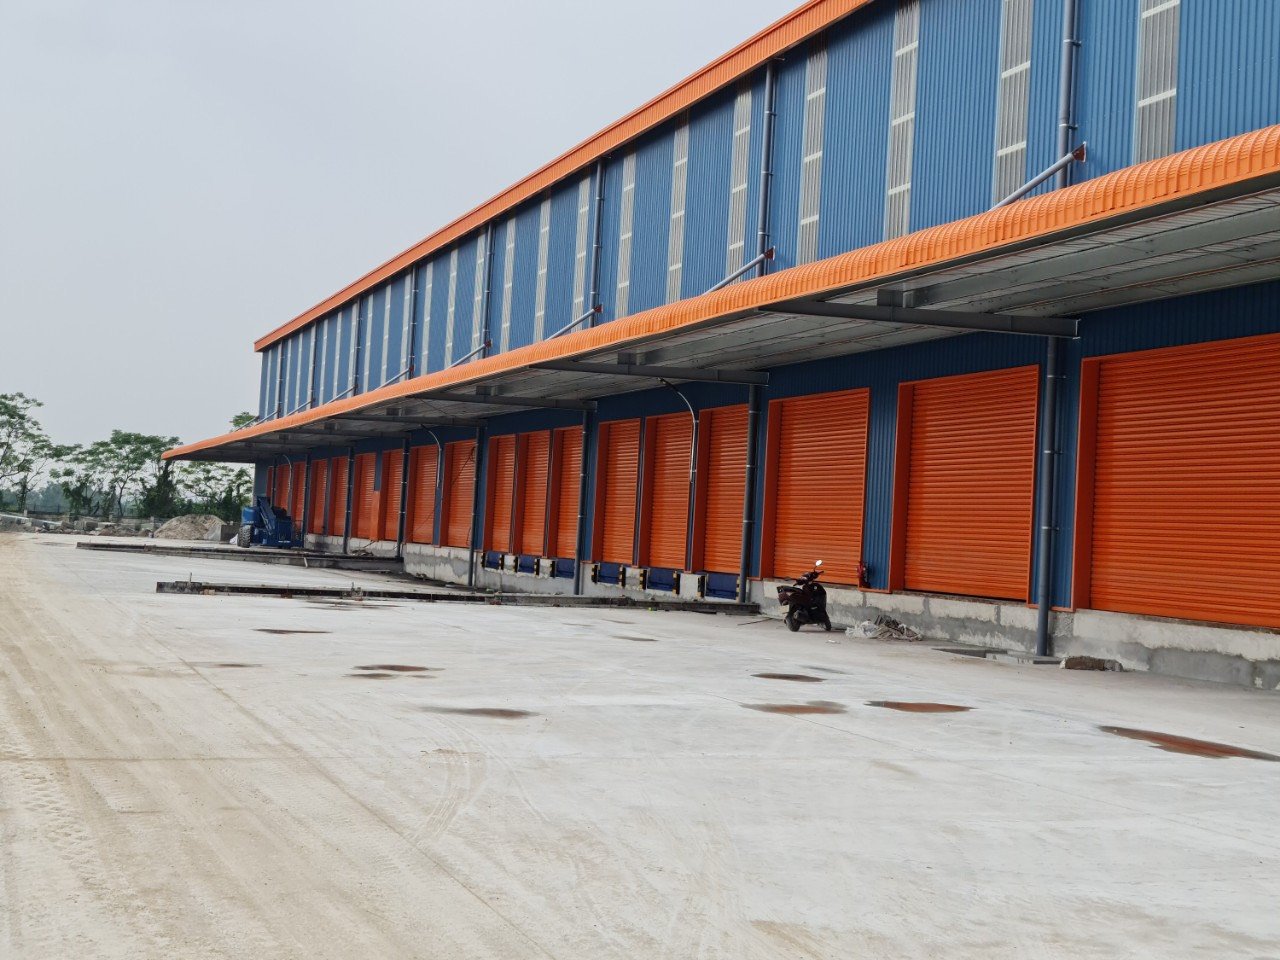 Cho thuê nhà xưởng mới trong và ngoài Khu CN Quế Võ, Bắc Ninh DT đa dạng 1000m2 đến 200.000m2 2